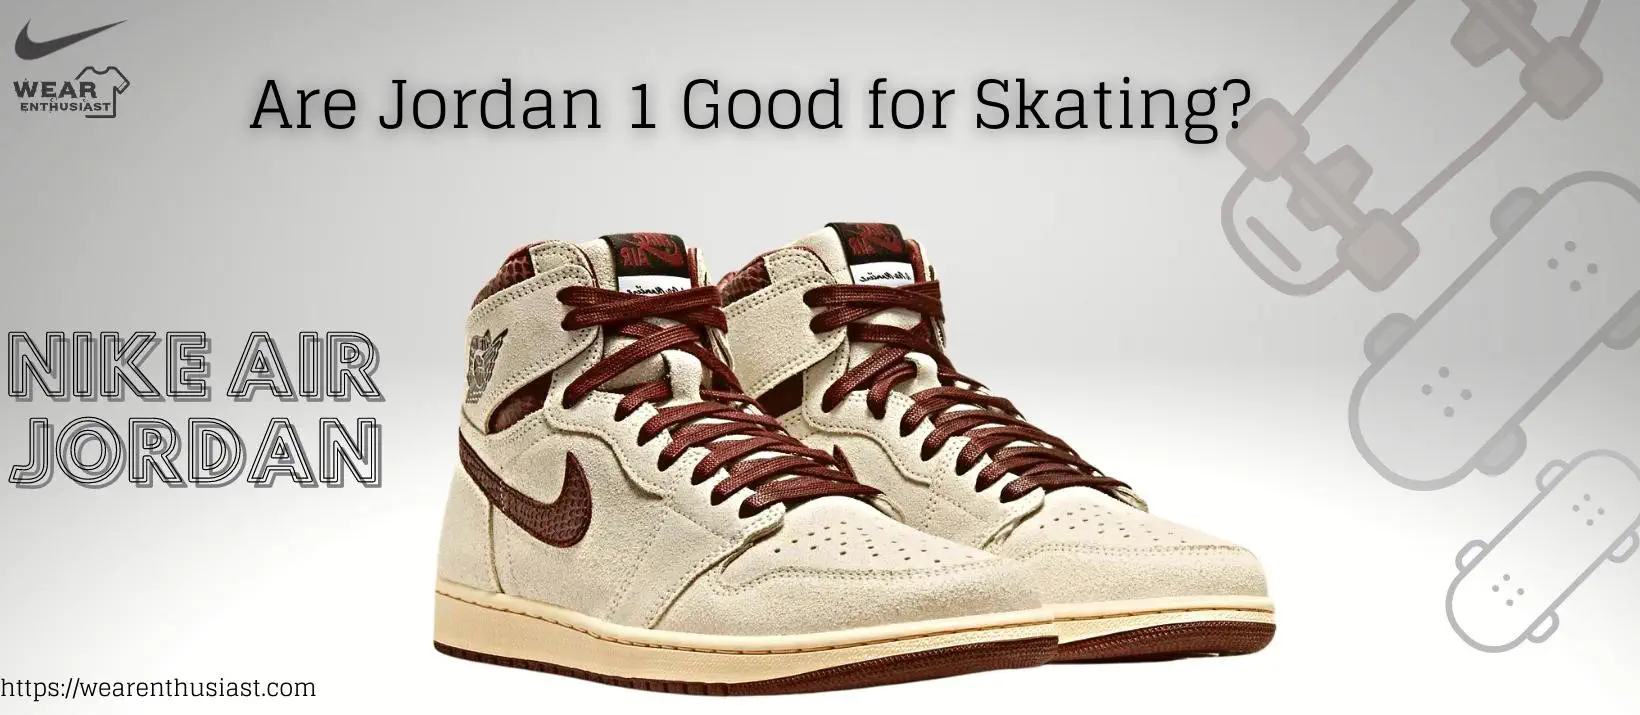 Are Jordan 1 Good for Skating?